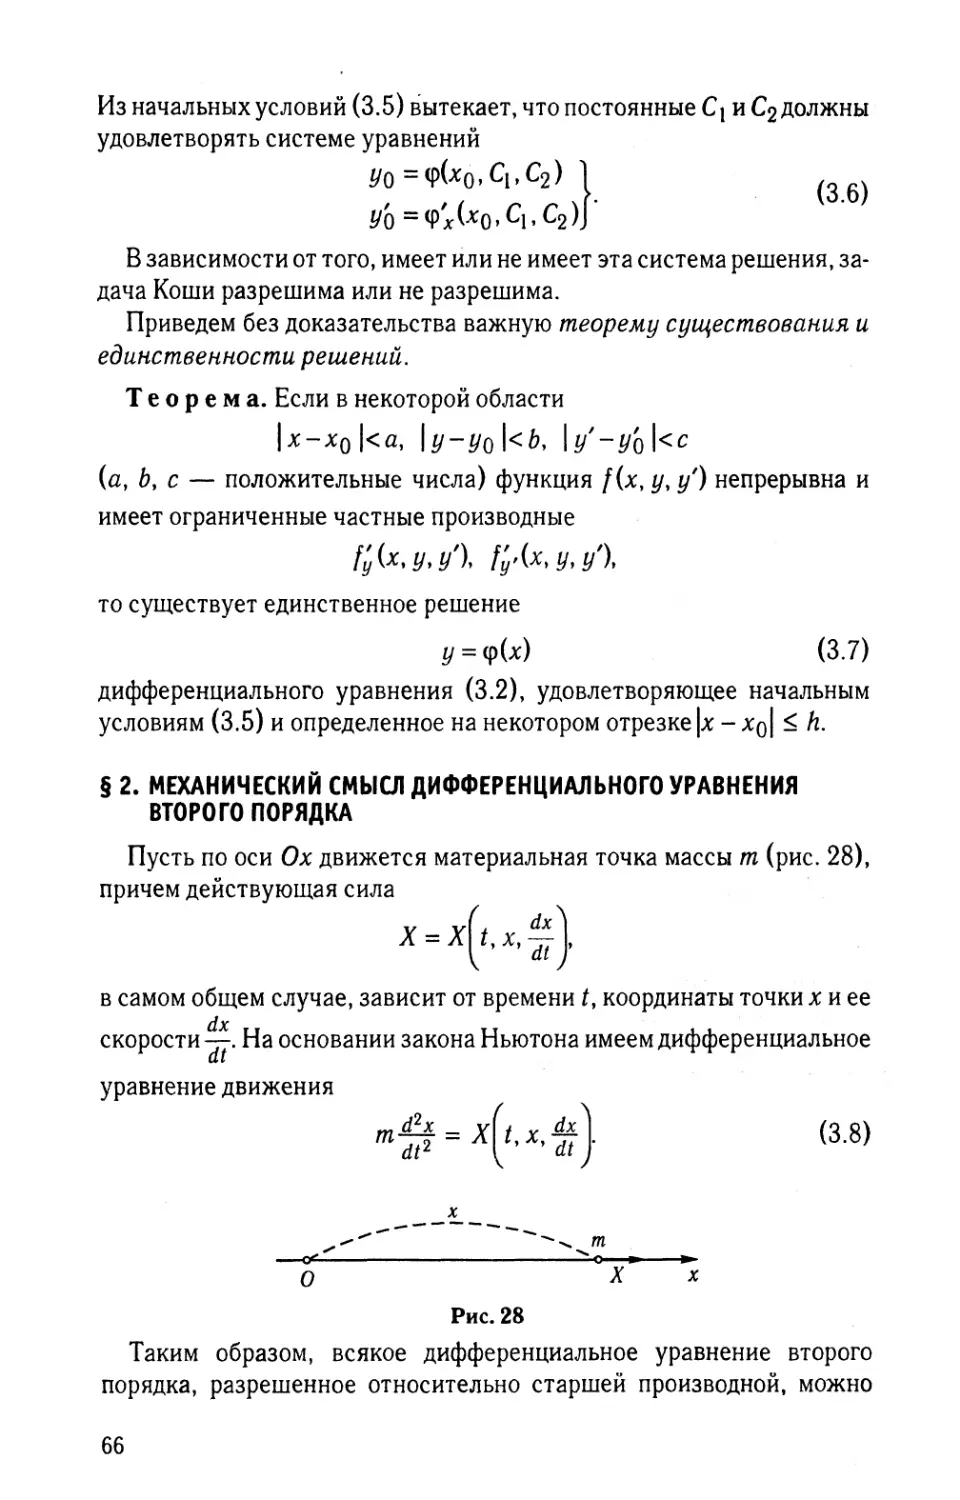 § 2. Механический смысл дифференциального уравнения второго порядка